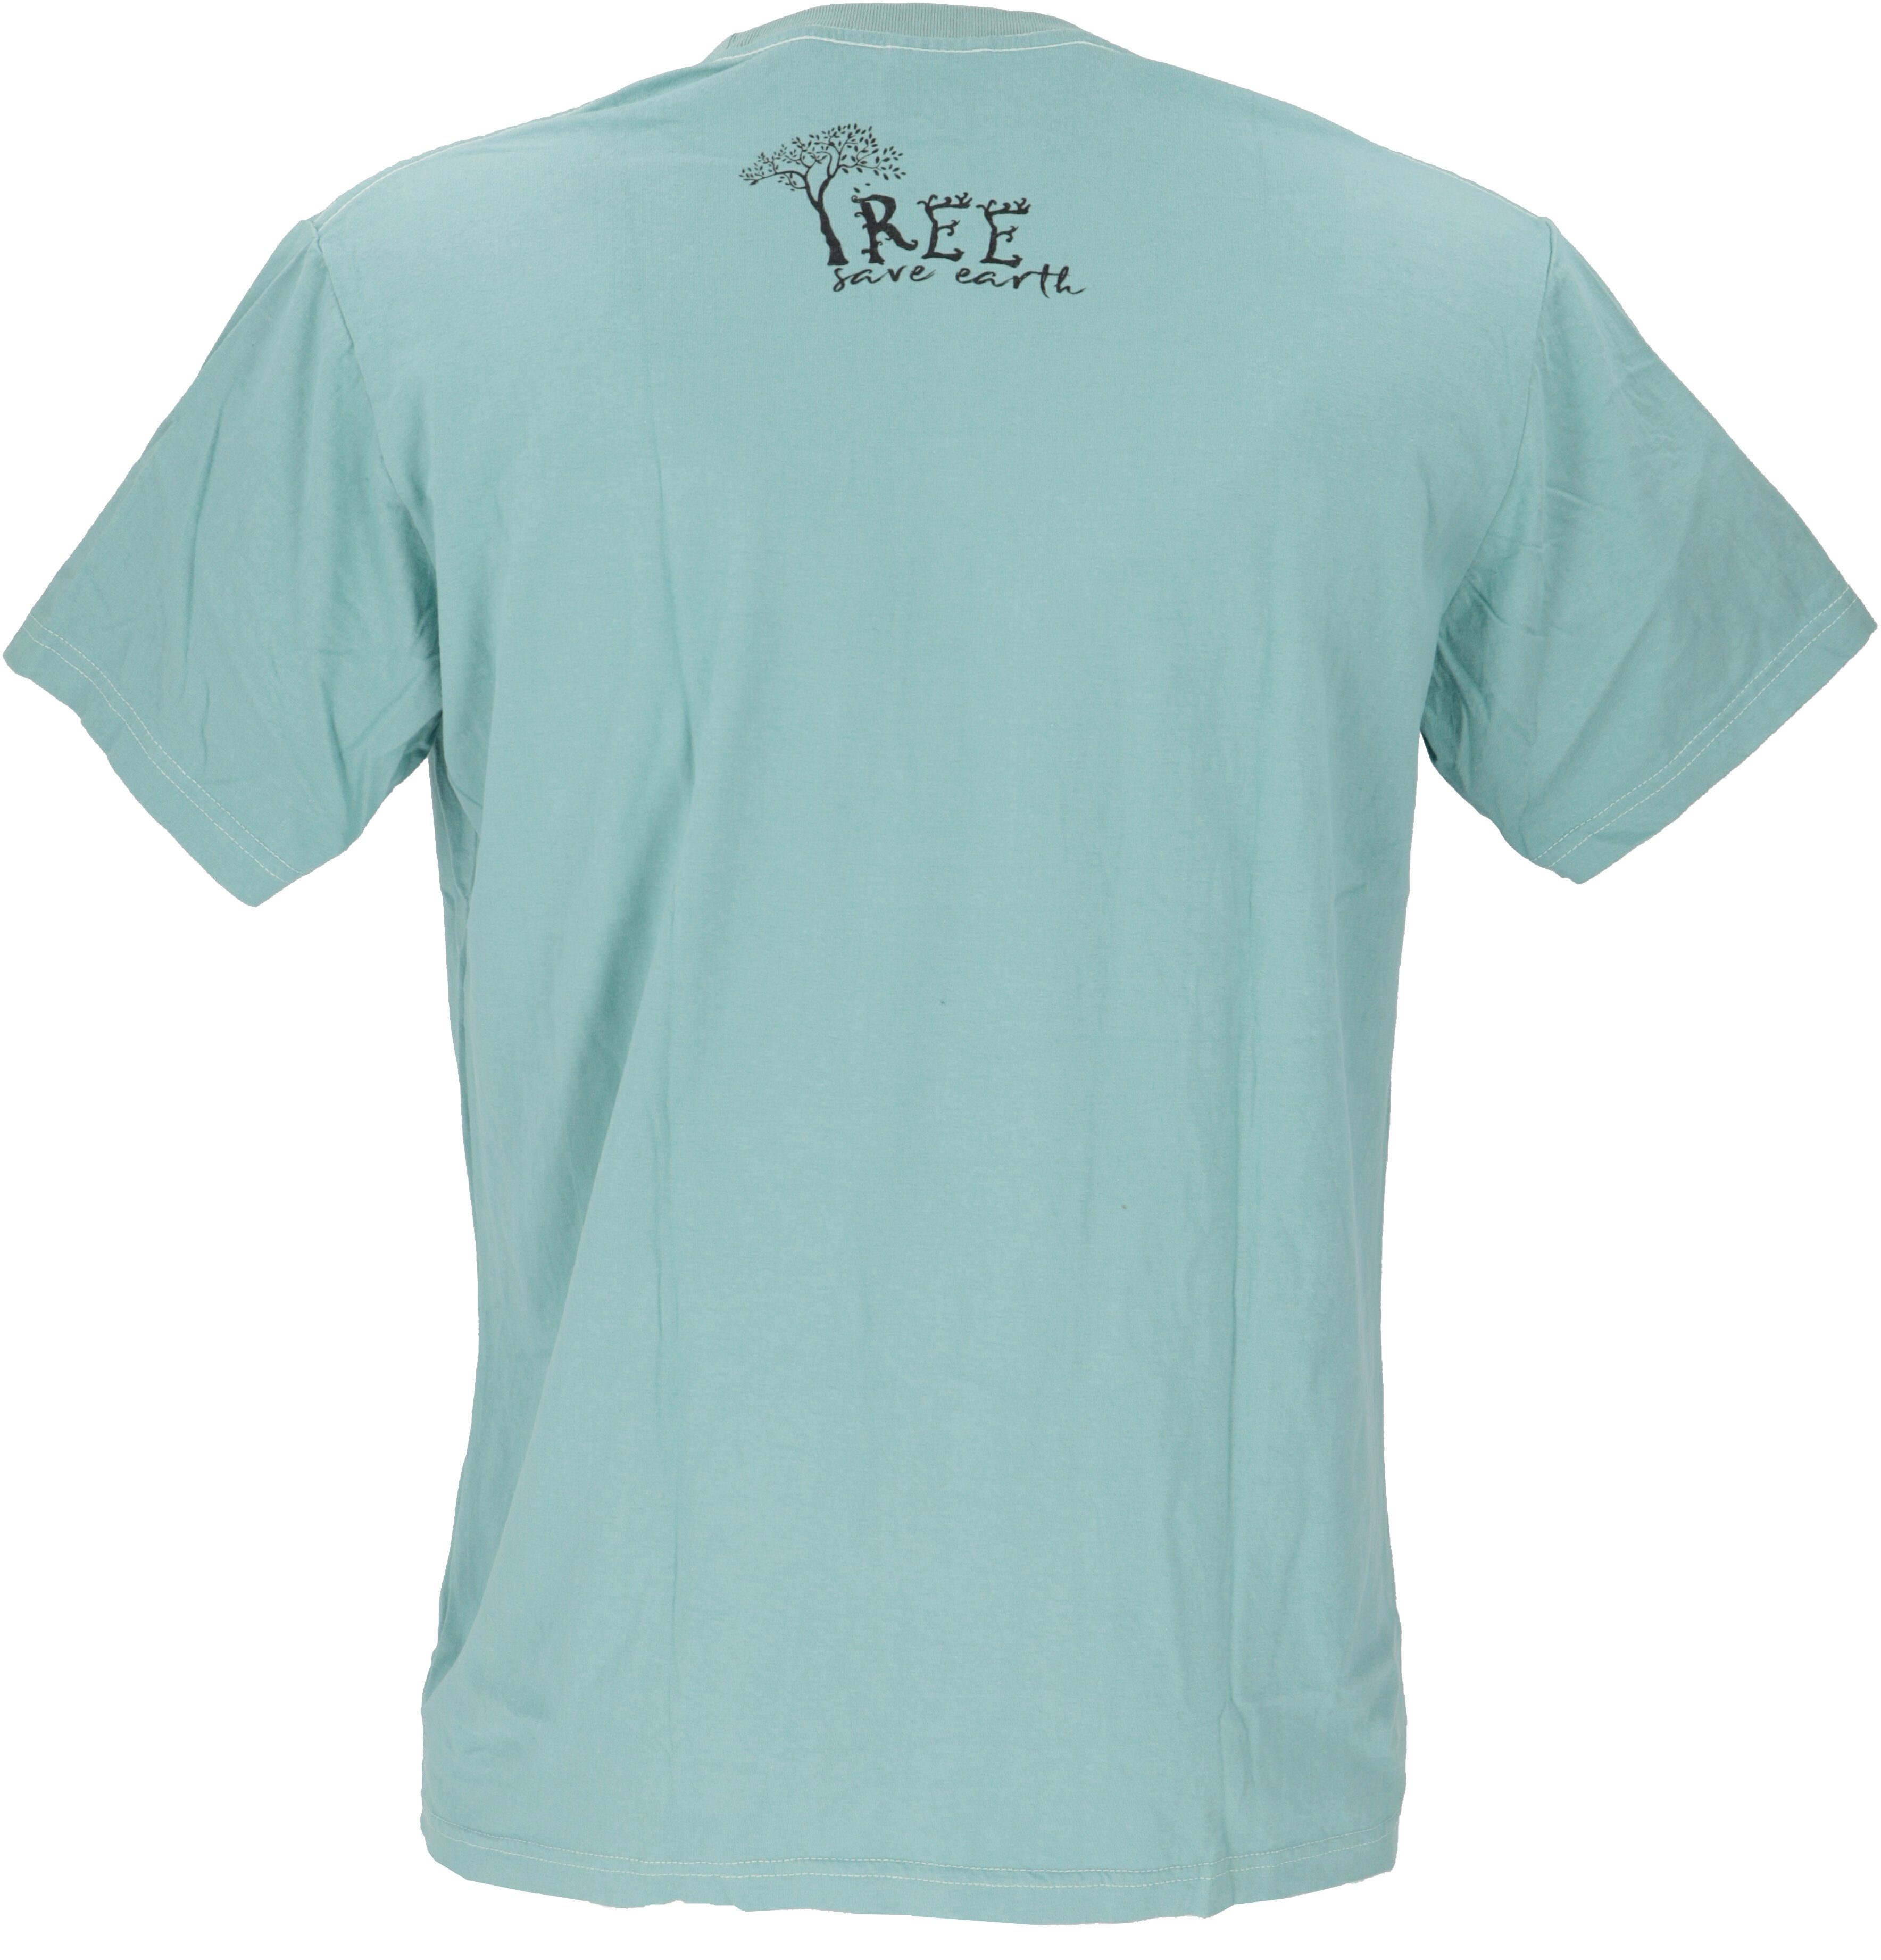 Guru-Shop T-Shirt save T-Shirt Retro earth T-Shirt, Tree/aqua Retro -.. Tree